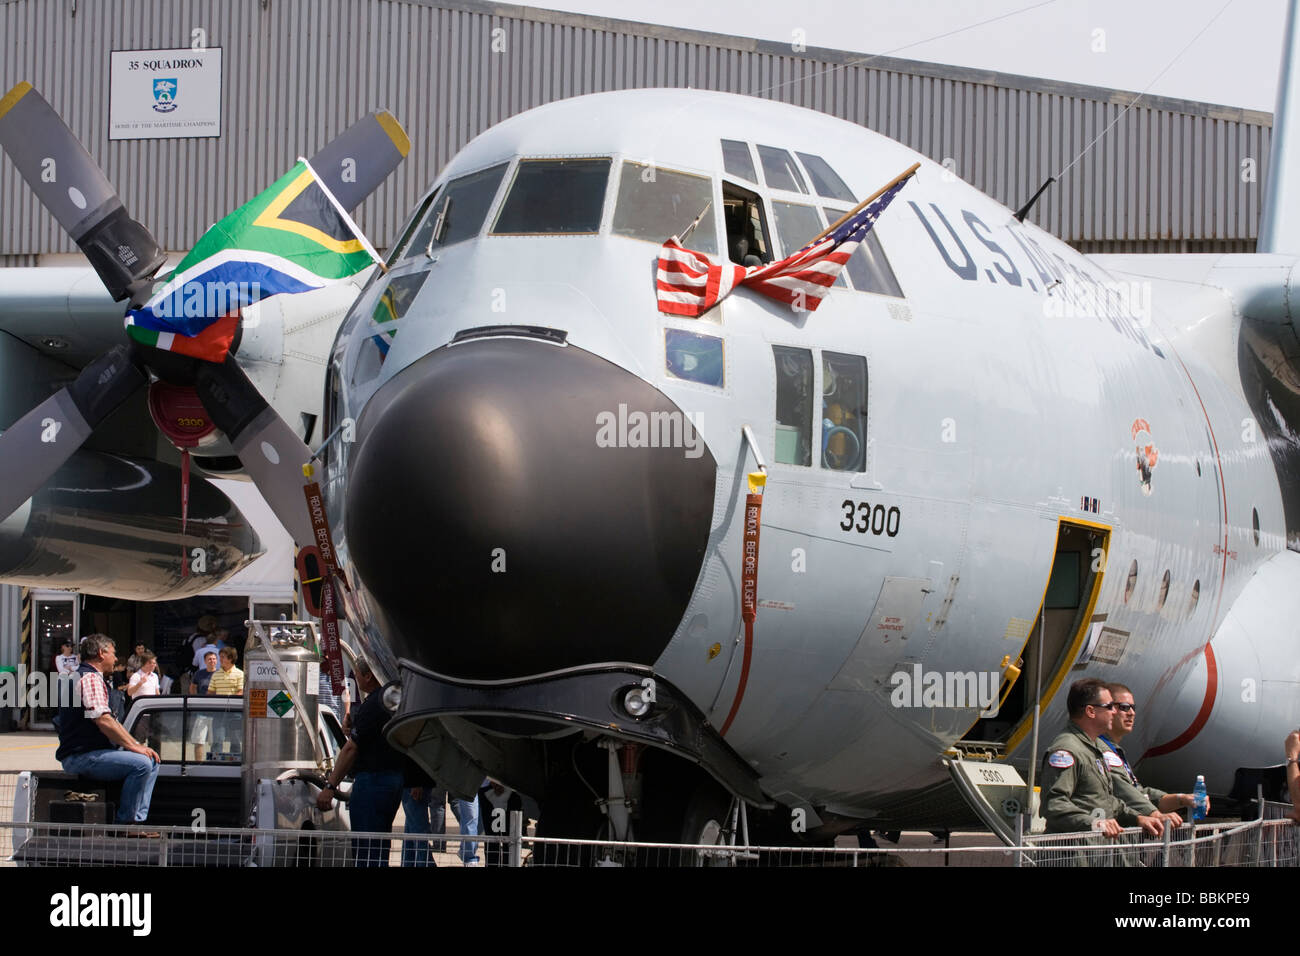 Ein United States Air Force Hercules Transport Turboprop-Flugzeug bei einer Flugschau in in Cape Town, Südafrika im September 2008 Stockfoto